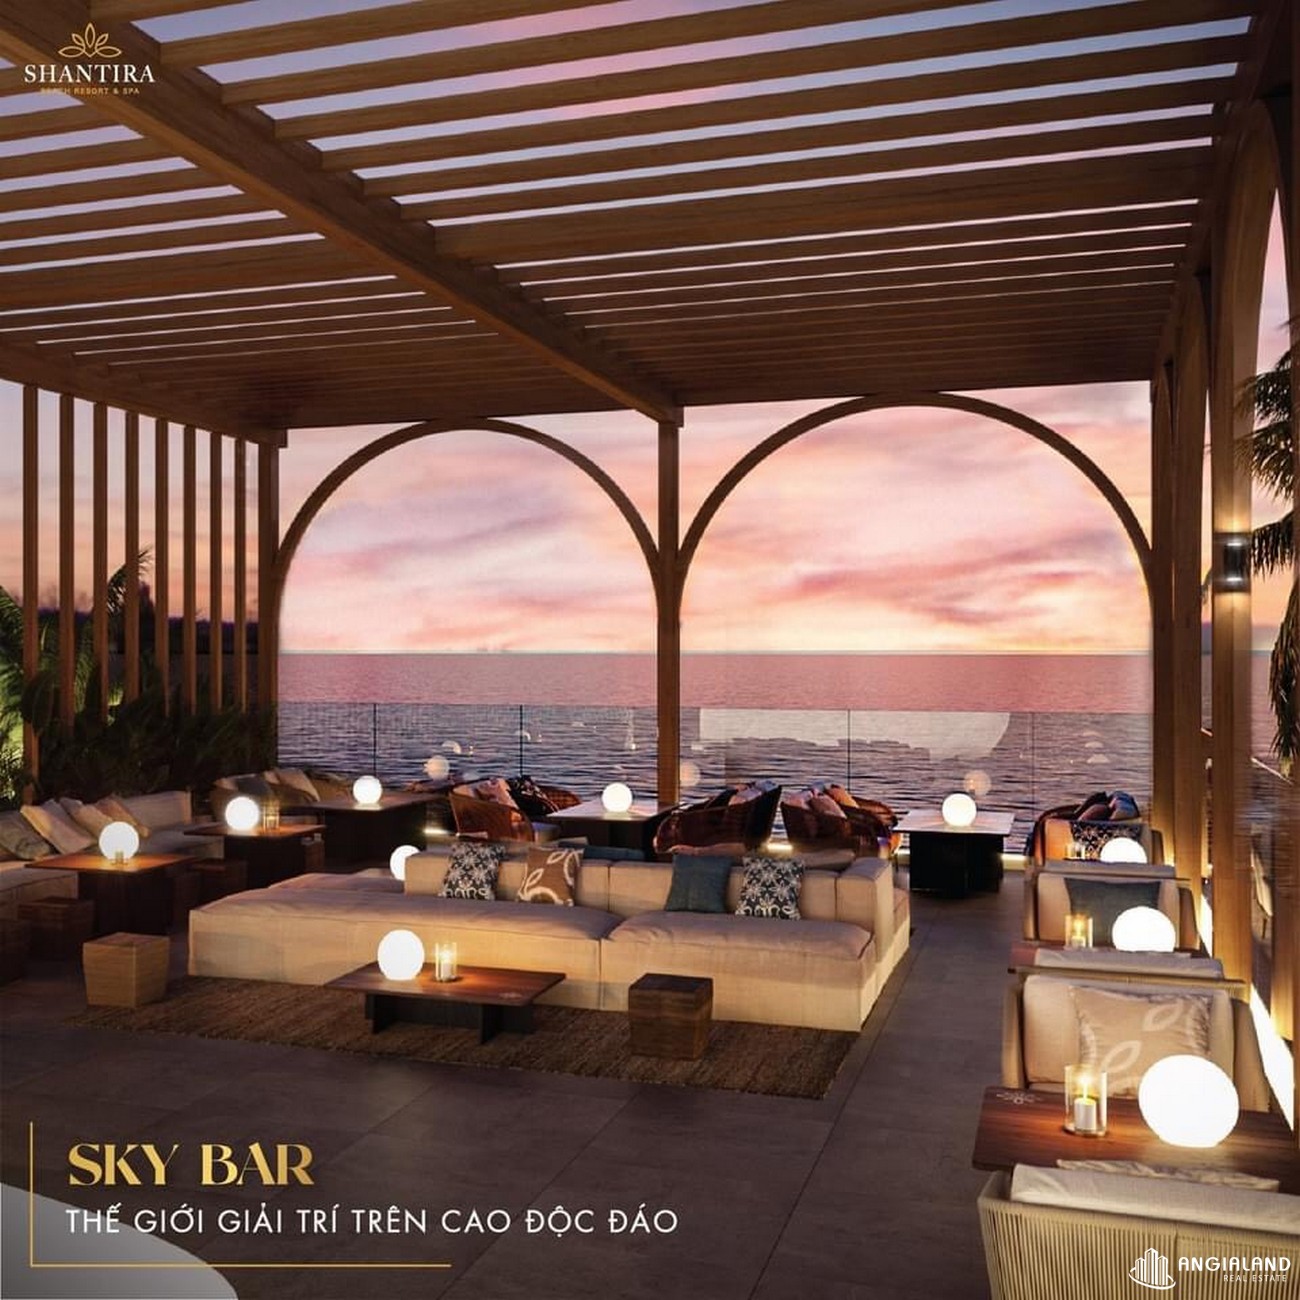 Sky Bar dự án căn hộ nghỉ dưỡng Shantira Hội An